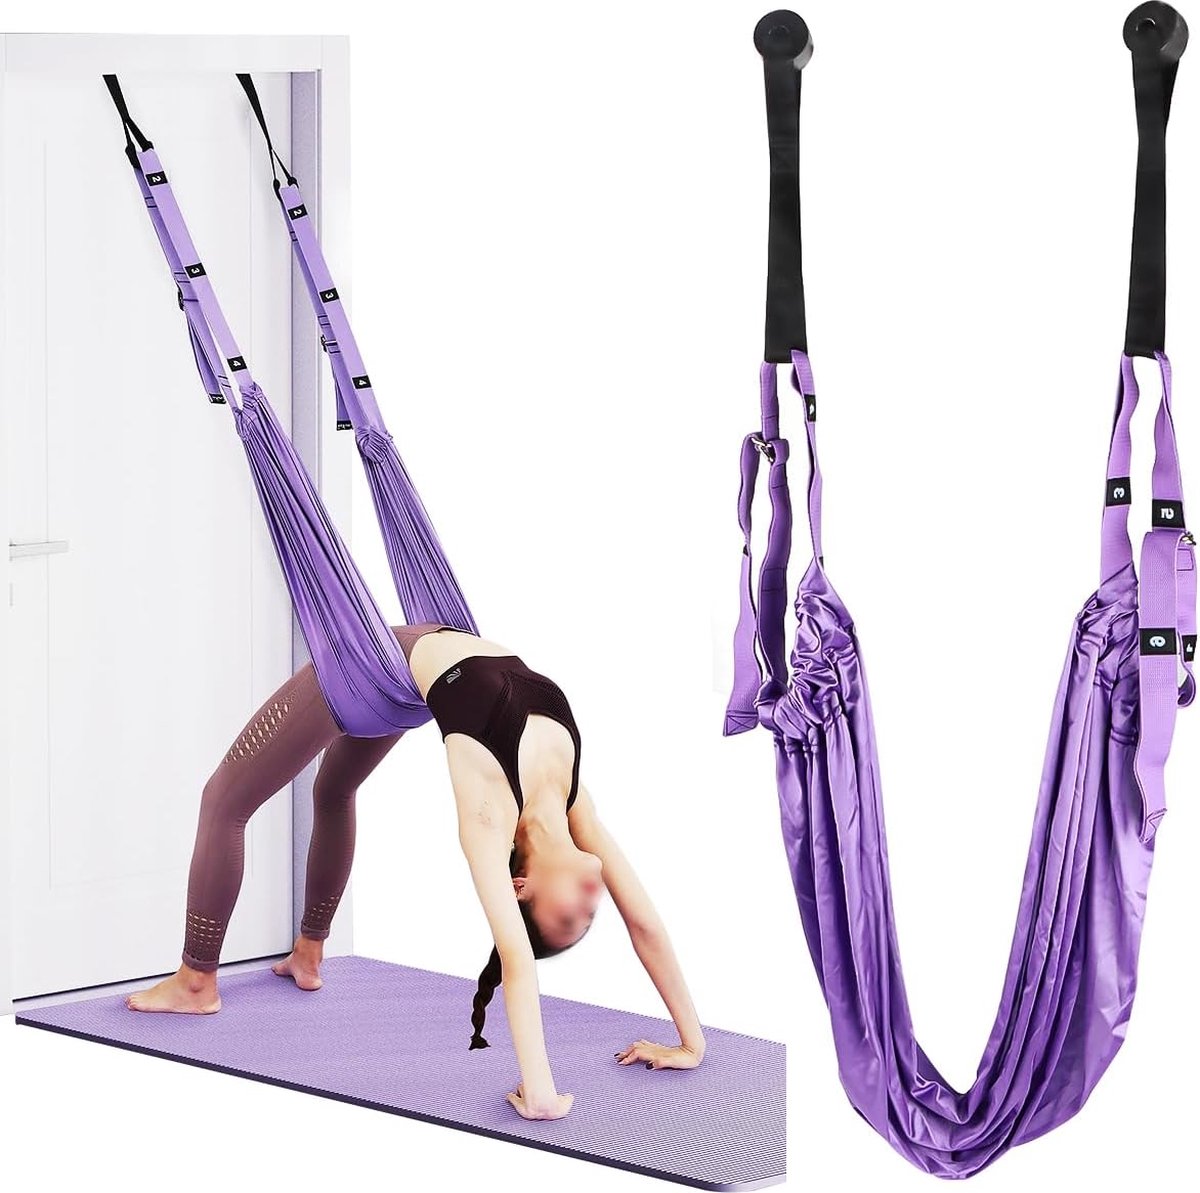 Yoga Hangmat, zeer elastische yogahanddoek om op te hangen, verstelbare yoga-schommel, aerial yoga touw voor revalidatie, pilates, ballet, cheerleading, spagat gymnastiek